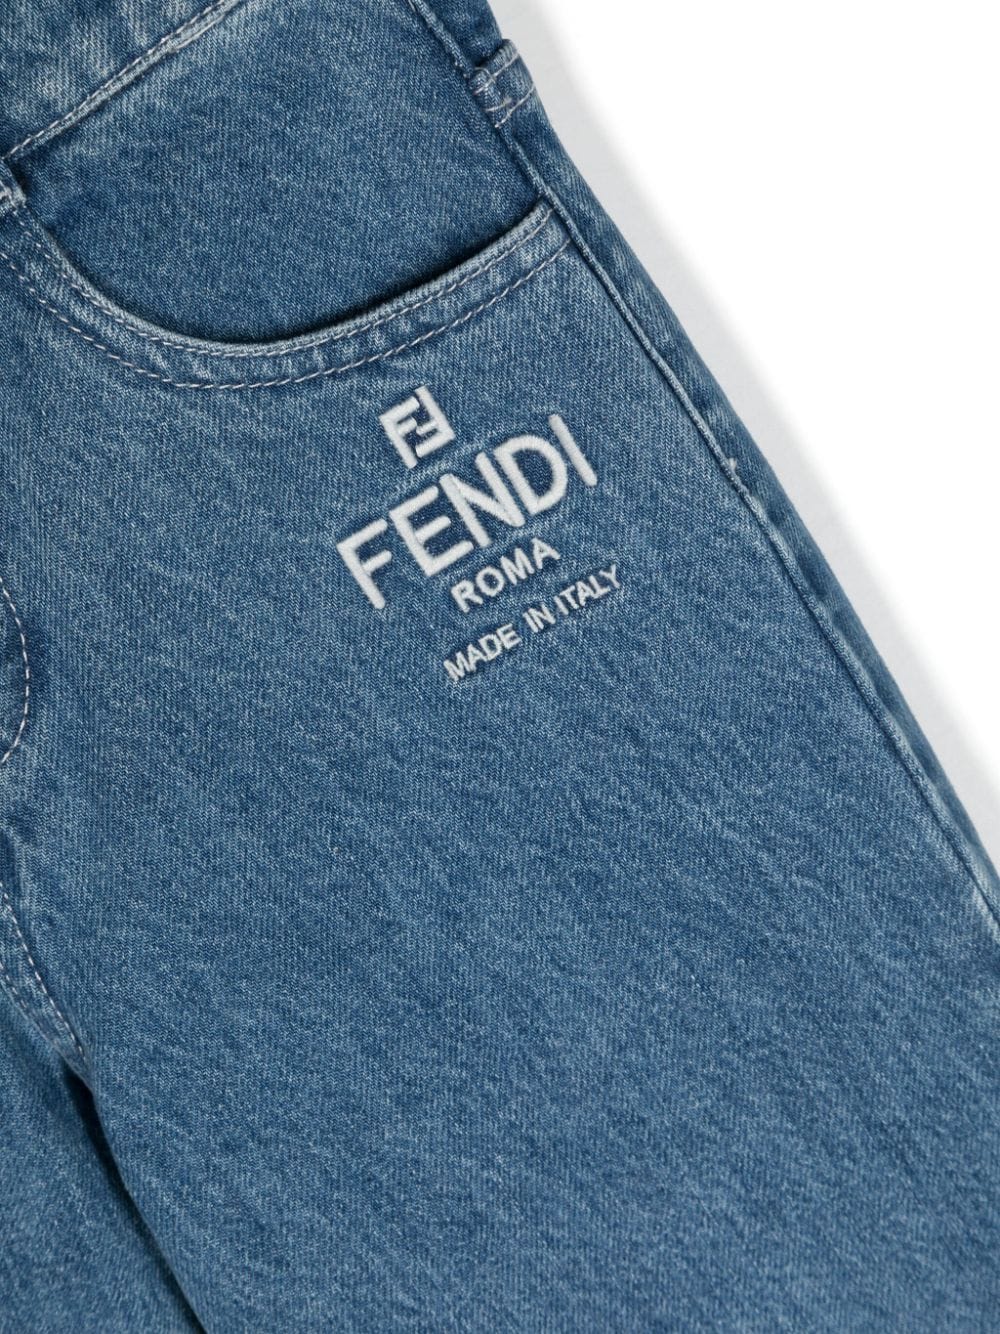 Jeans per bambino in cotone con logo